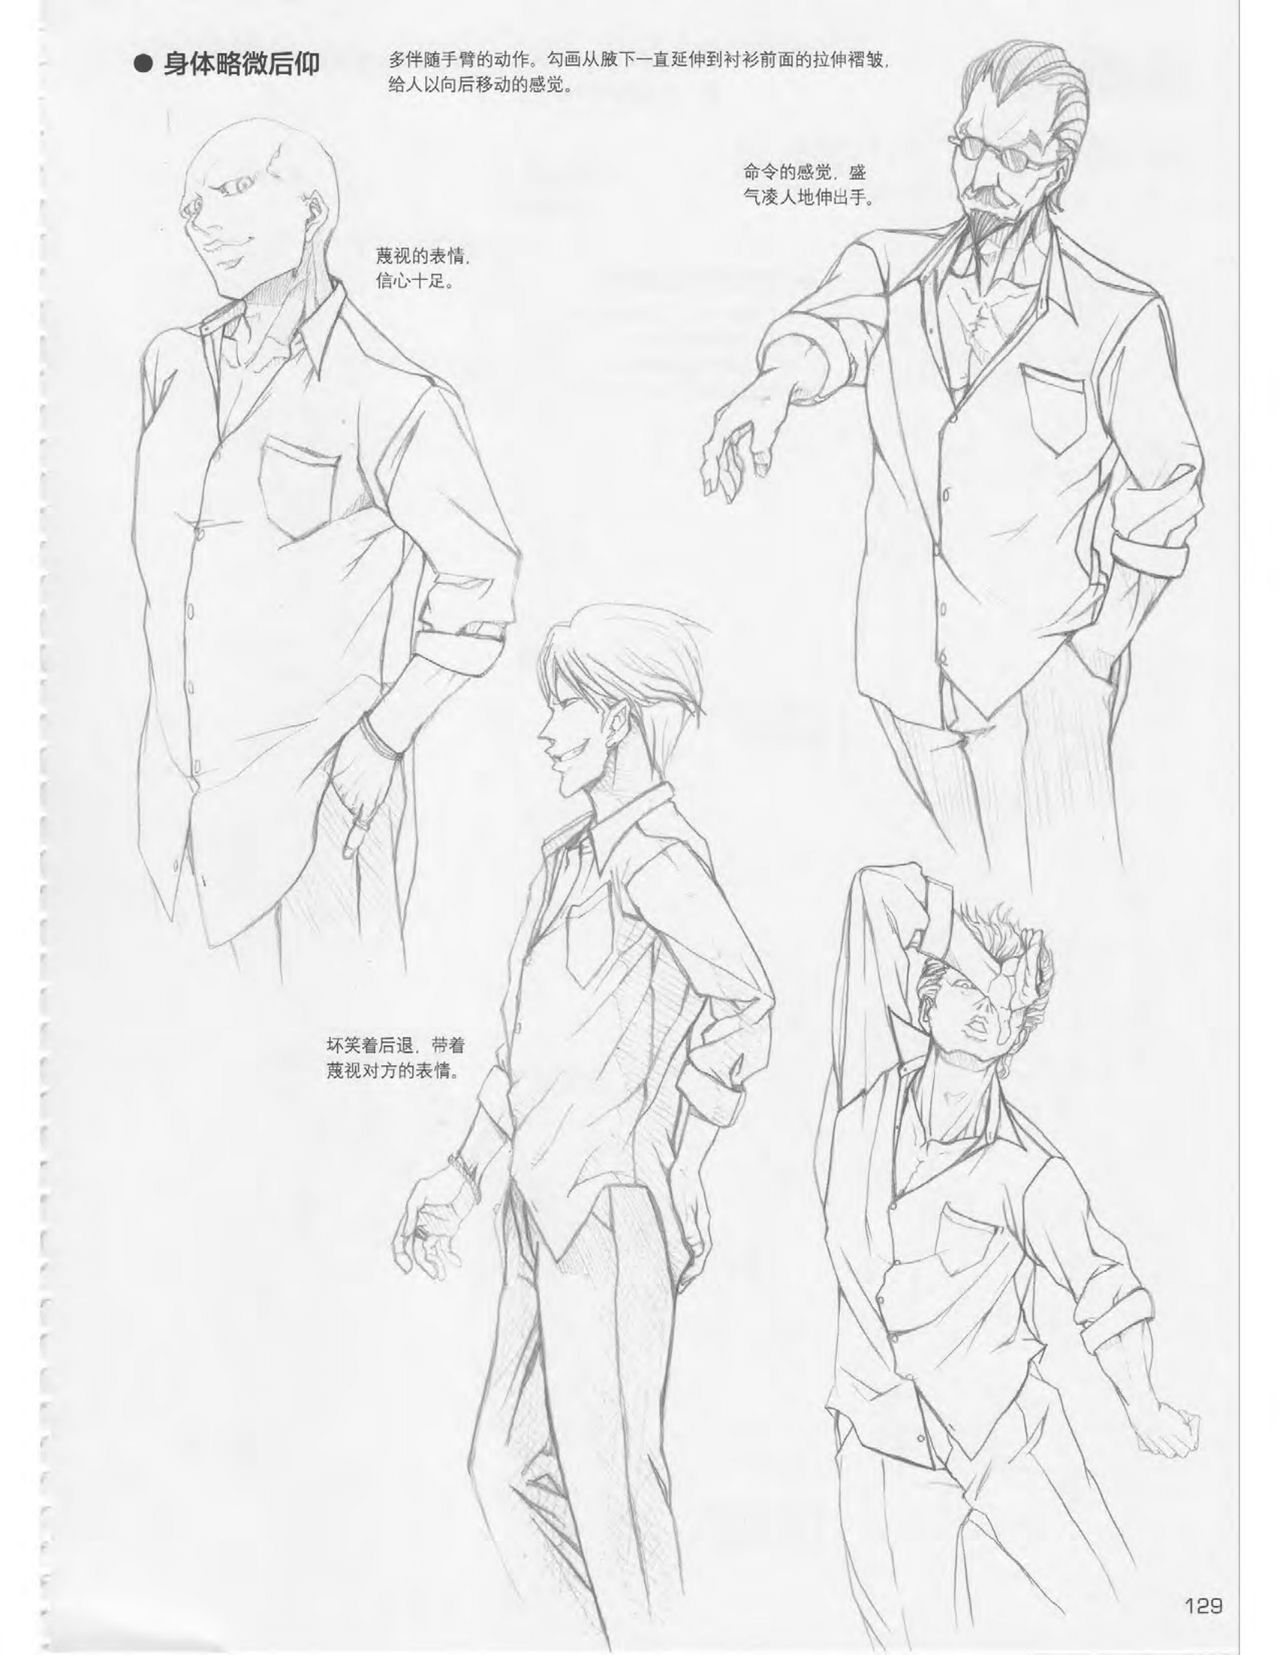 Japanese Manga Master Lecture 3: Lin Akira and Kakumaru Maru Talk About Glamorous Character Modeling 128